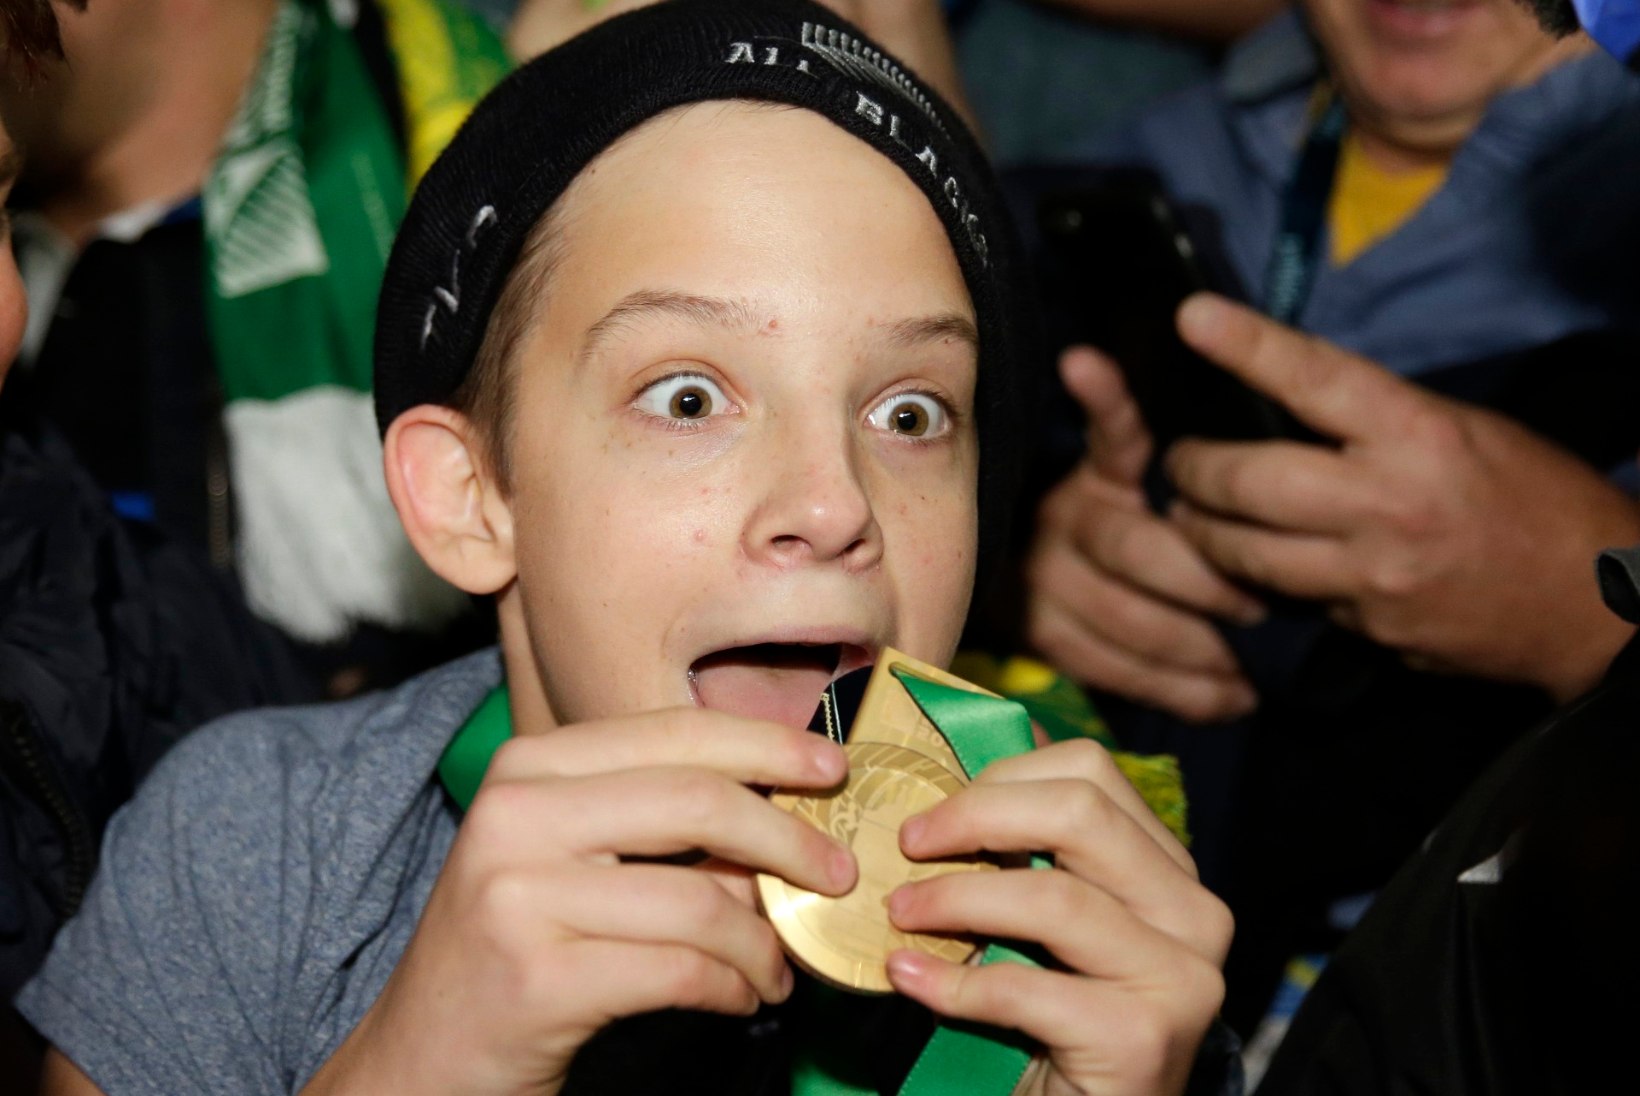 VIDEO | MILLINE SÜDA! Ragbi maailmameister kinkis väljakule jooksnud poisile noomituse asemel medali